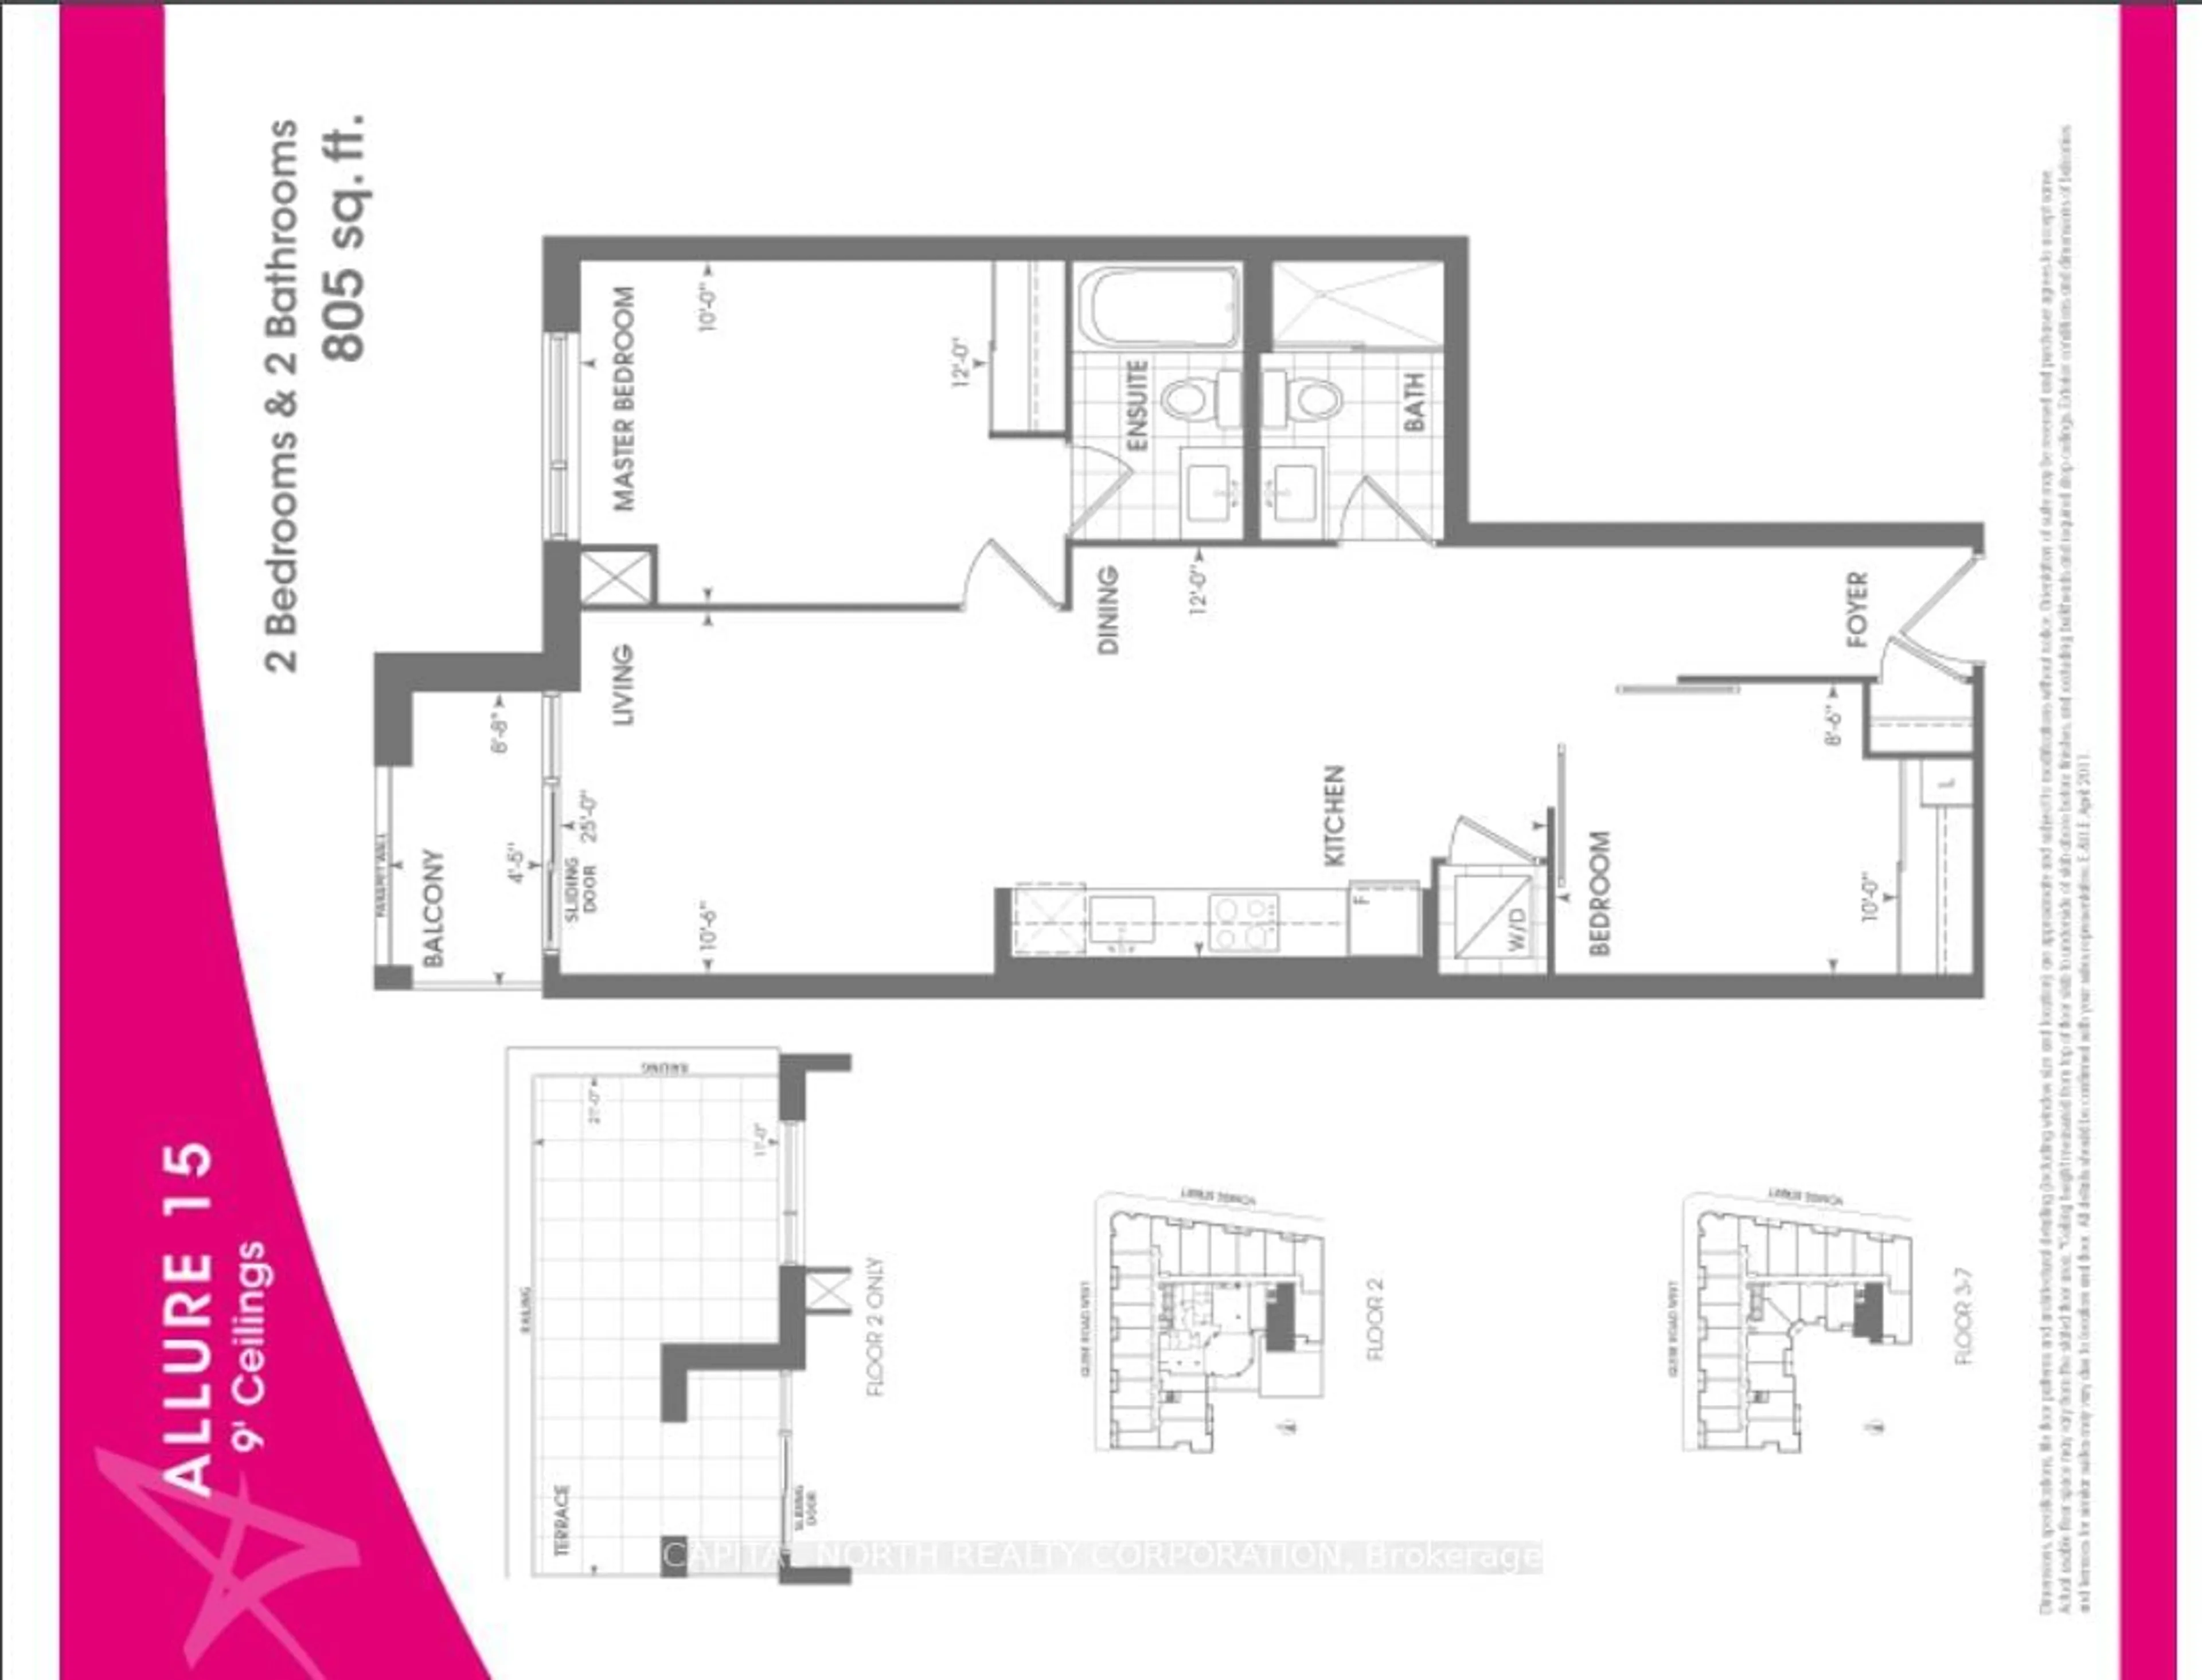 Floor plan for 23 Glebe Rd #604, Toronto Ontario M5P 0A1